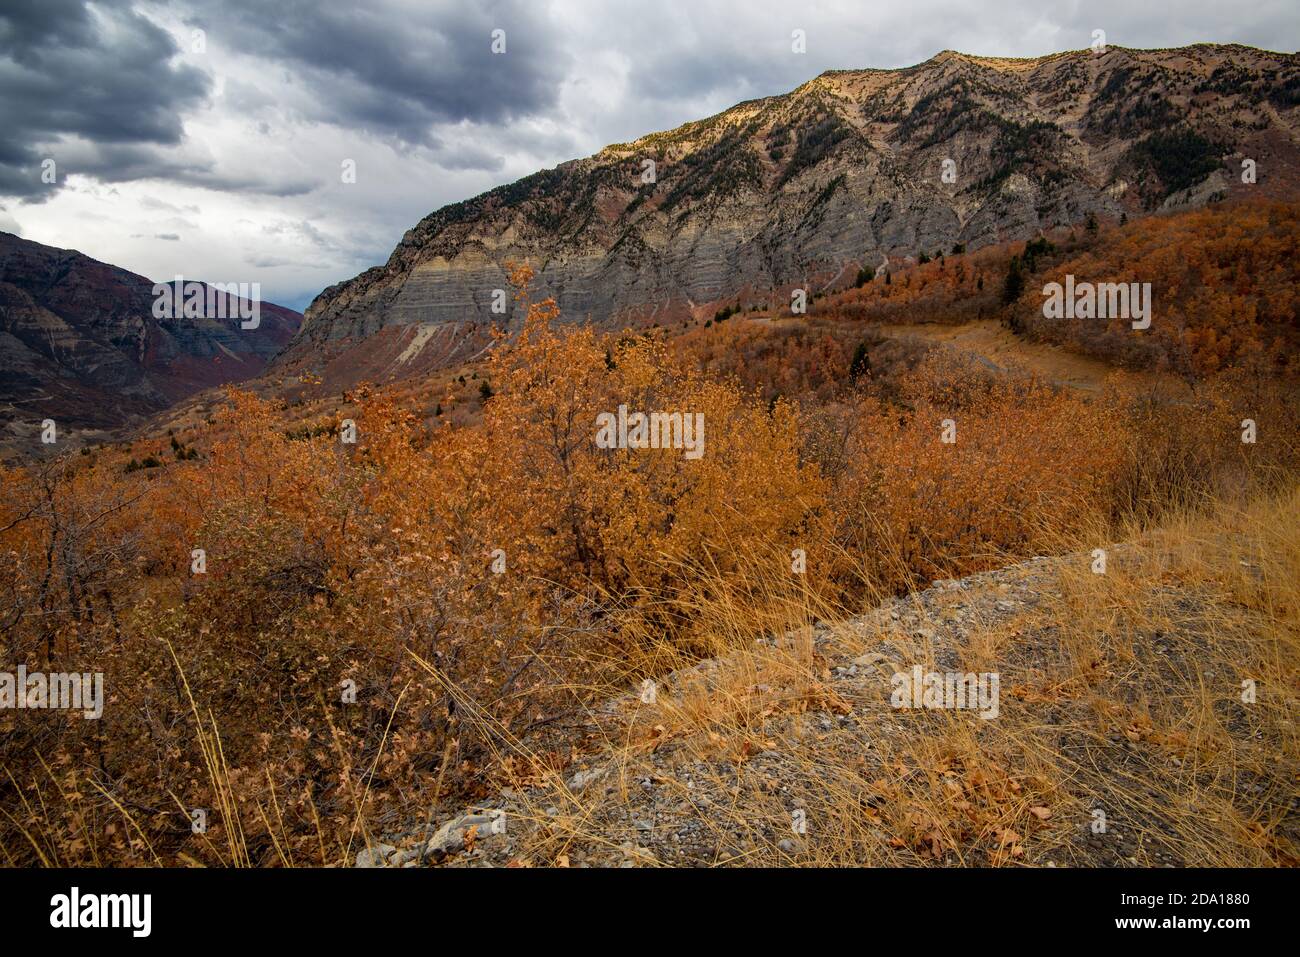 Die hohen Granitgipfel und Klippen im Norden Utahs, USA, sind im Herbst spektakulär. Die Bergstraße bietet endlose Panoramablicke auf die Bergkette. Stockfoto